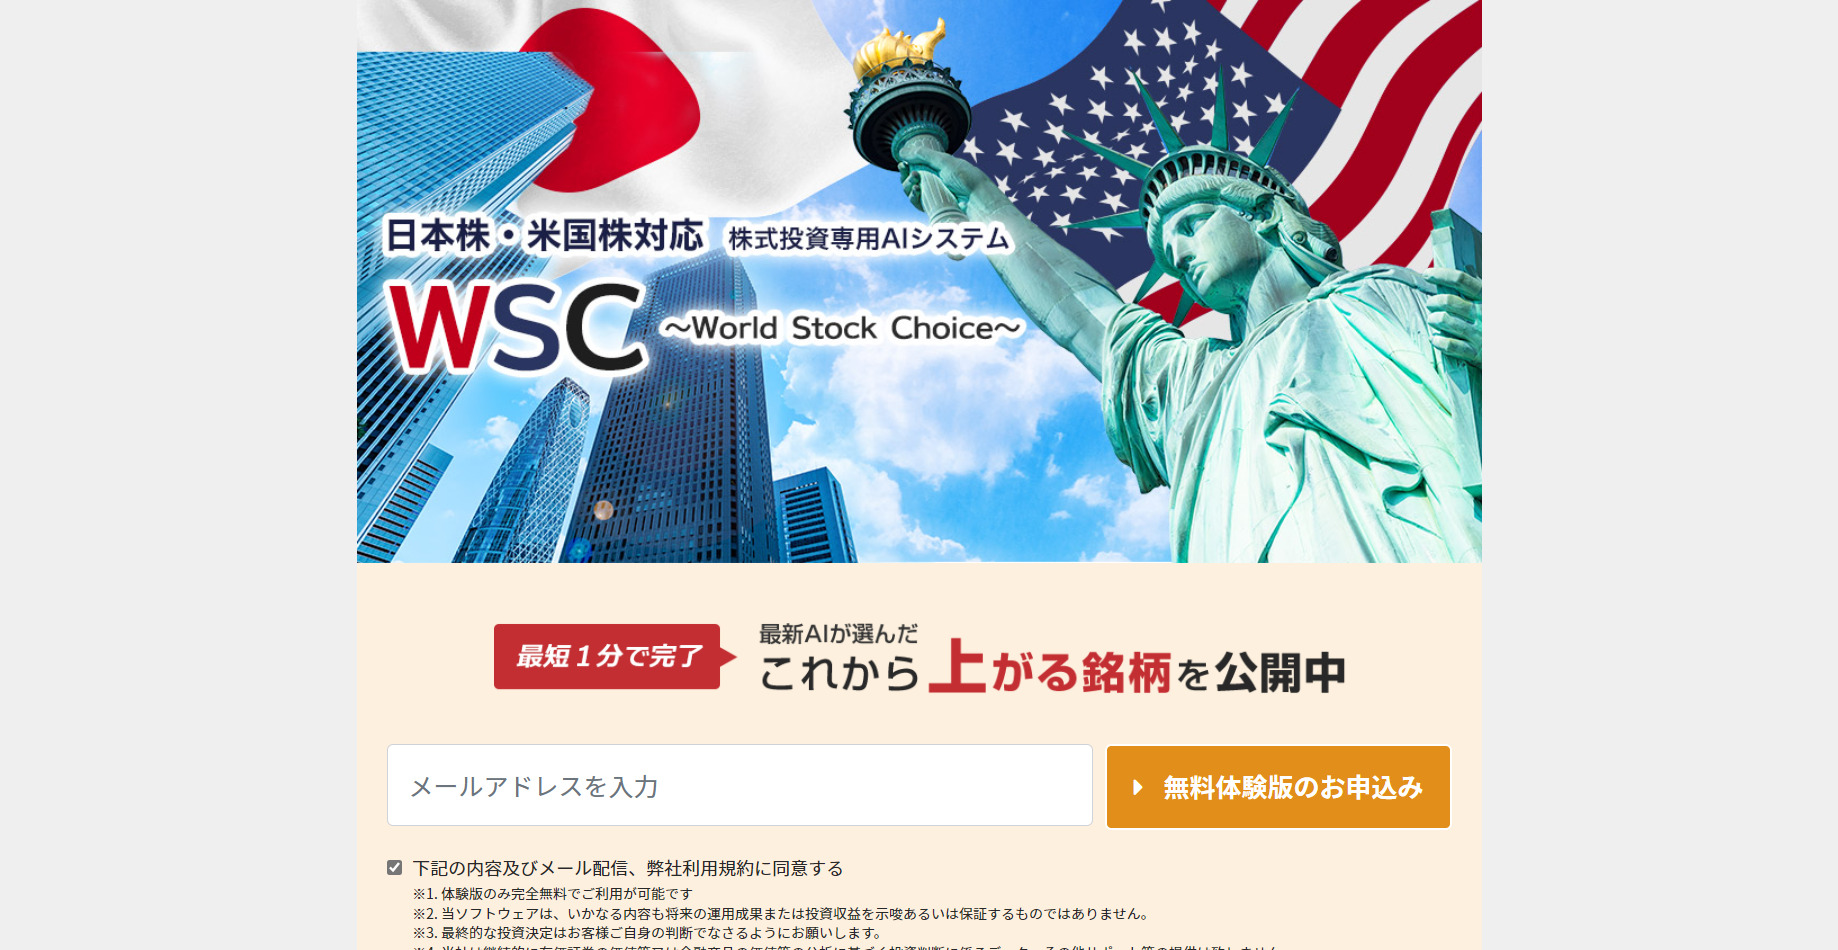 WSC-World Stock Choice-は怪しい？口コミから判明した真実とは